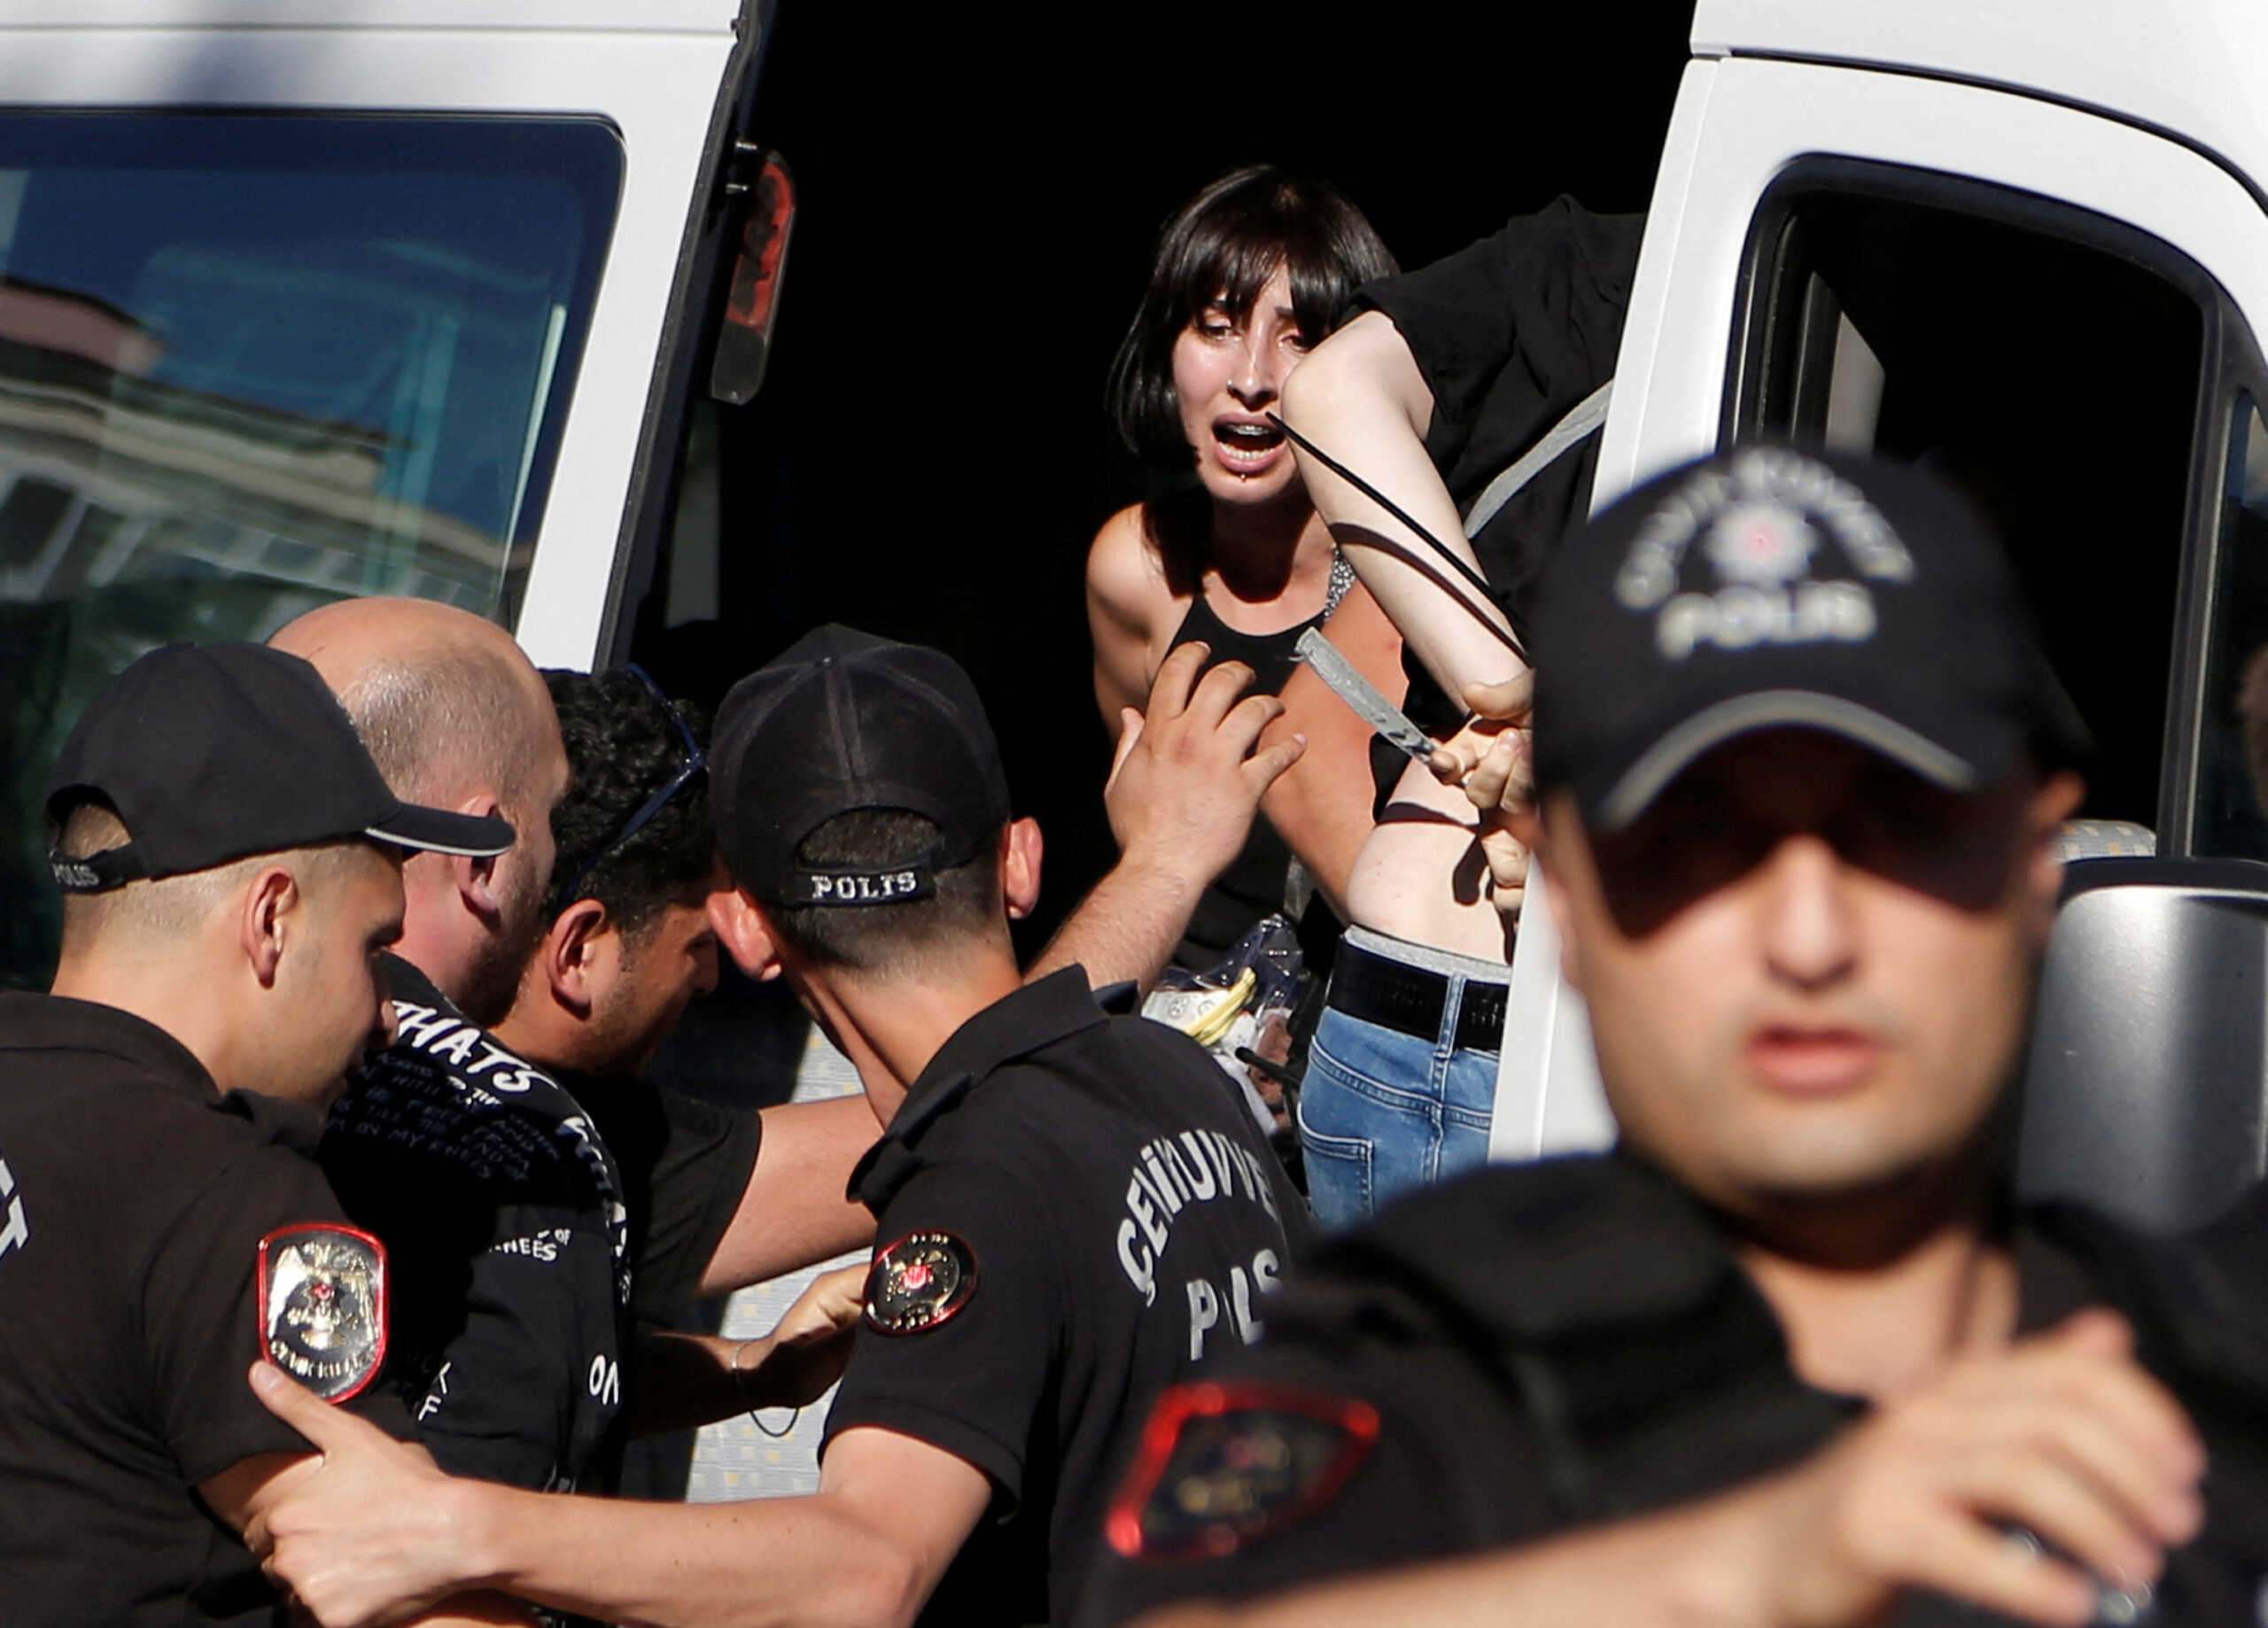 Τουρκία: Δακρυγόνα και 36 συλλήψεις σε πορεία pride στην Άγκυρα